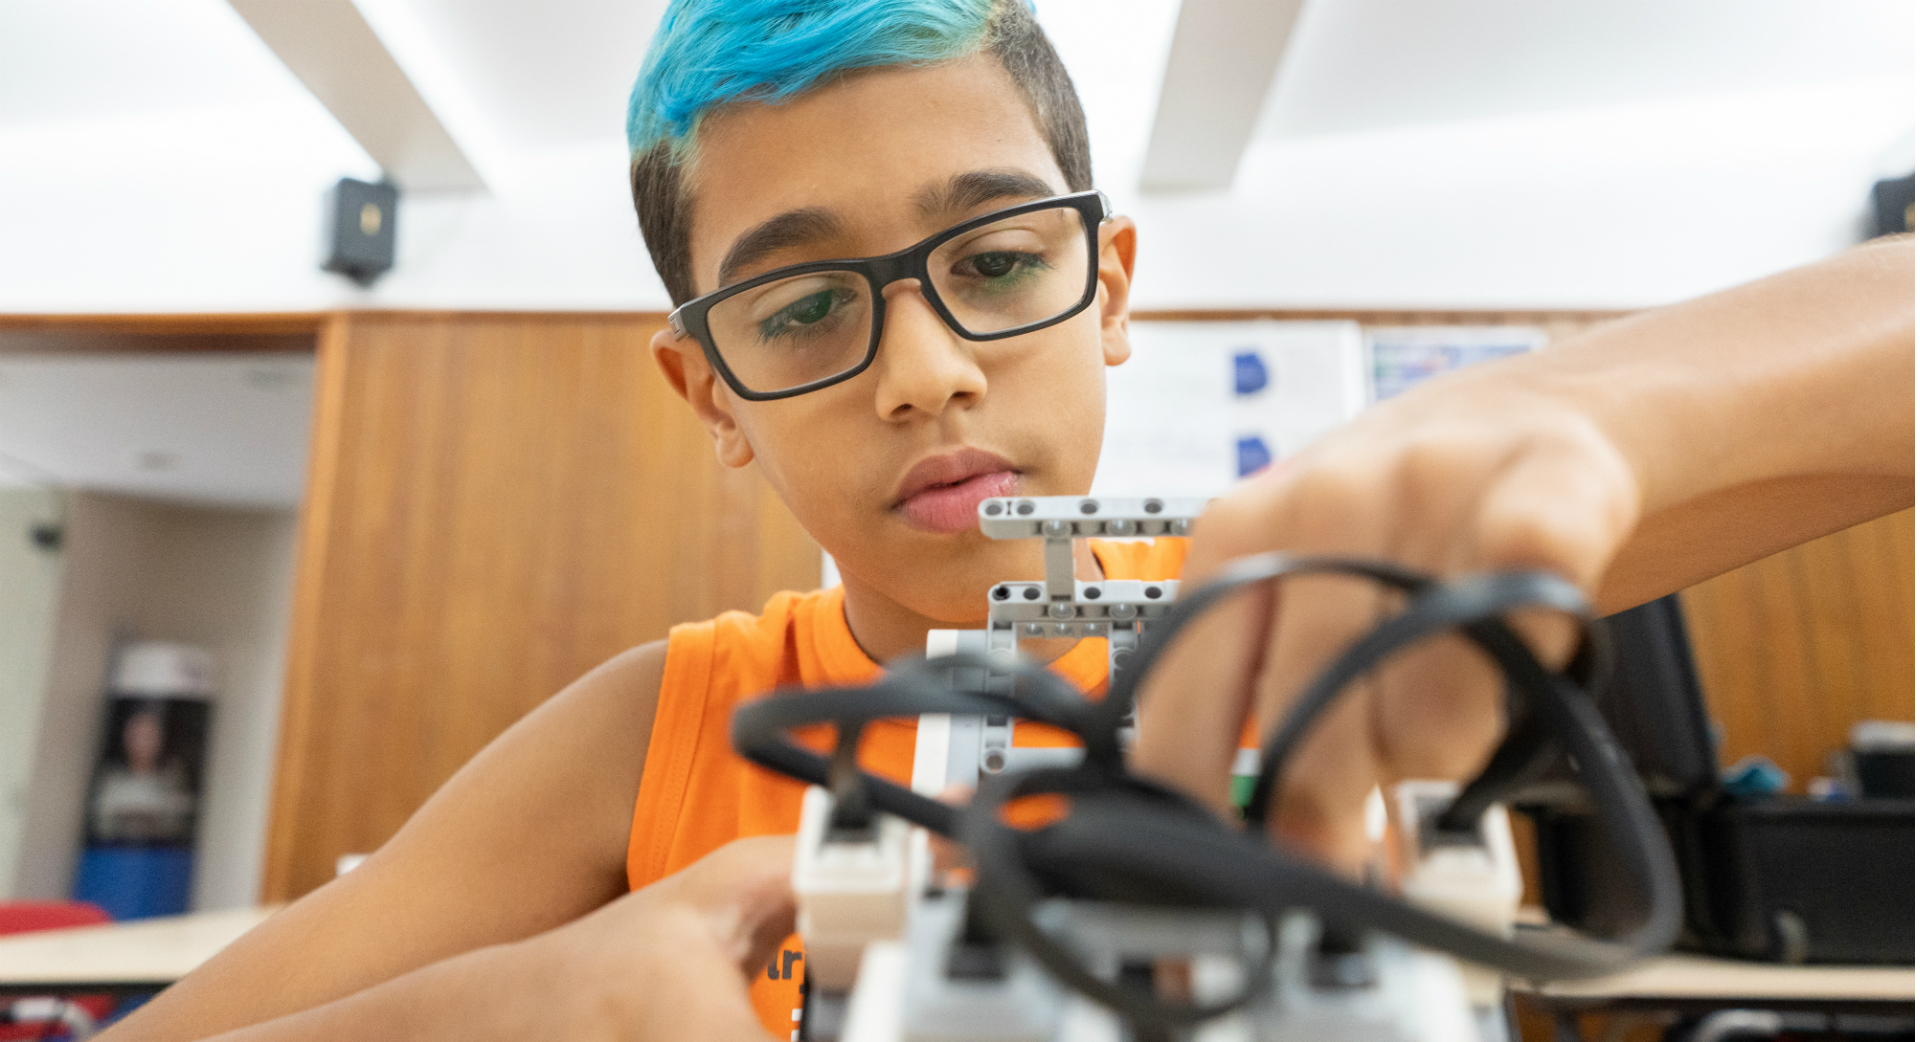 Pedro sonha em construir e programar próteses robóticas para auxiliar pessoas com mobilidade reduzida